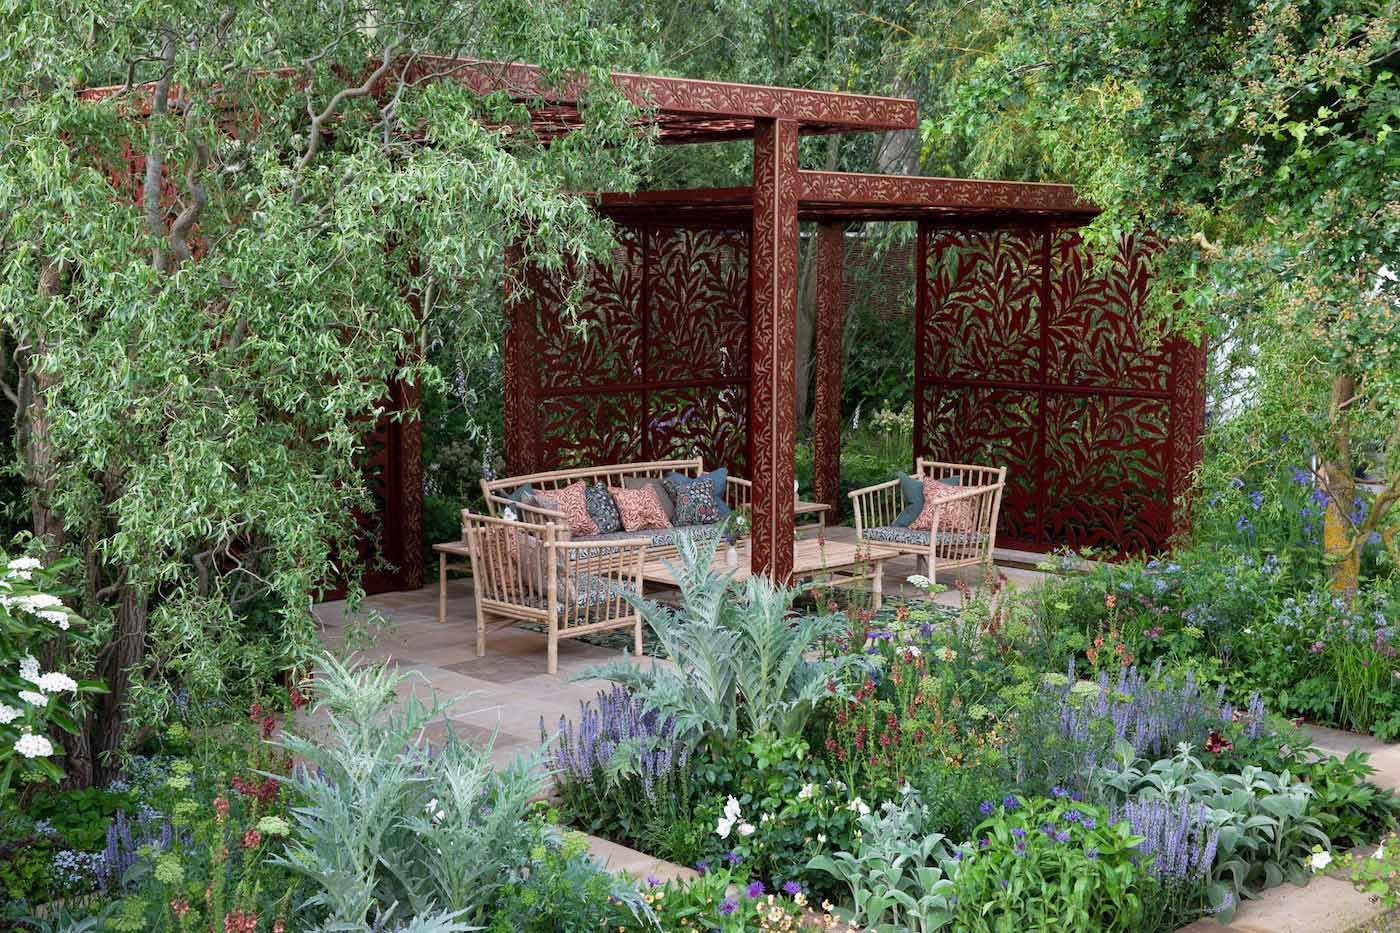 Garden Design Gold Award Winner: Morris & Co. Garden